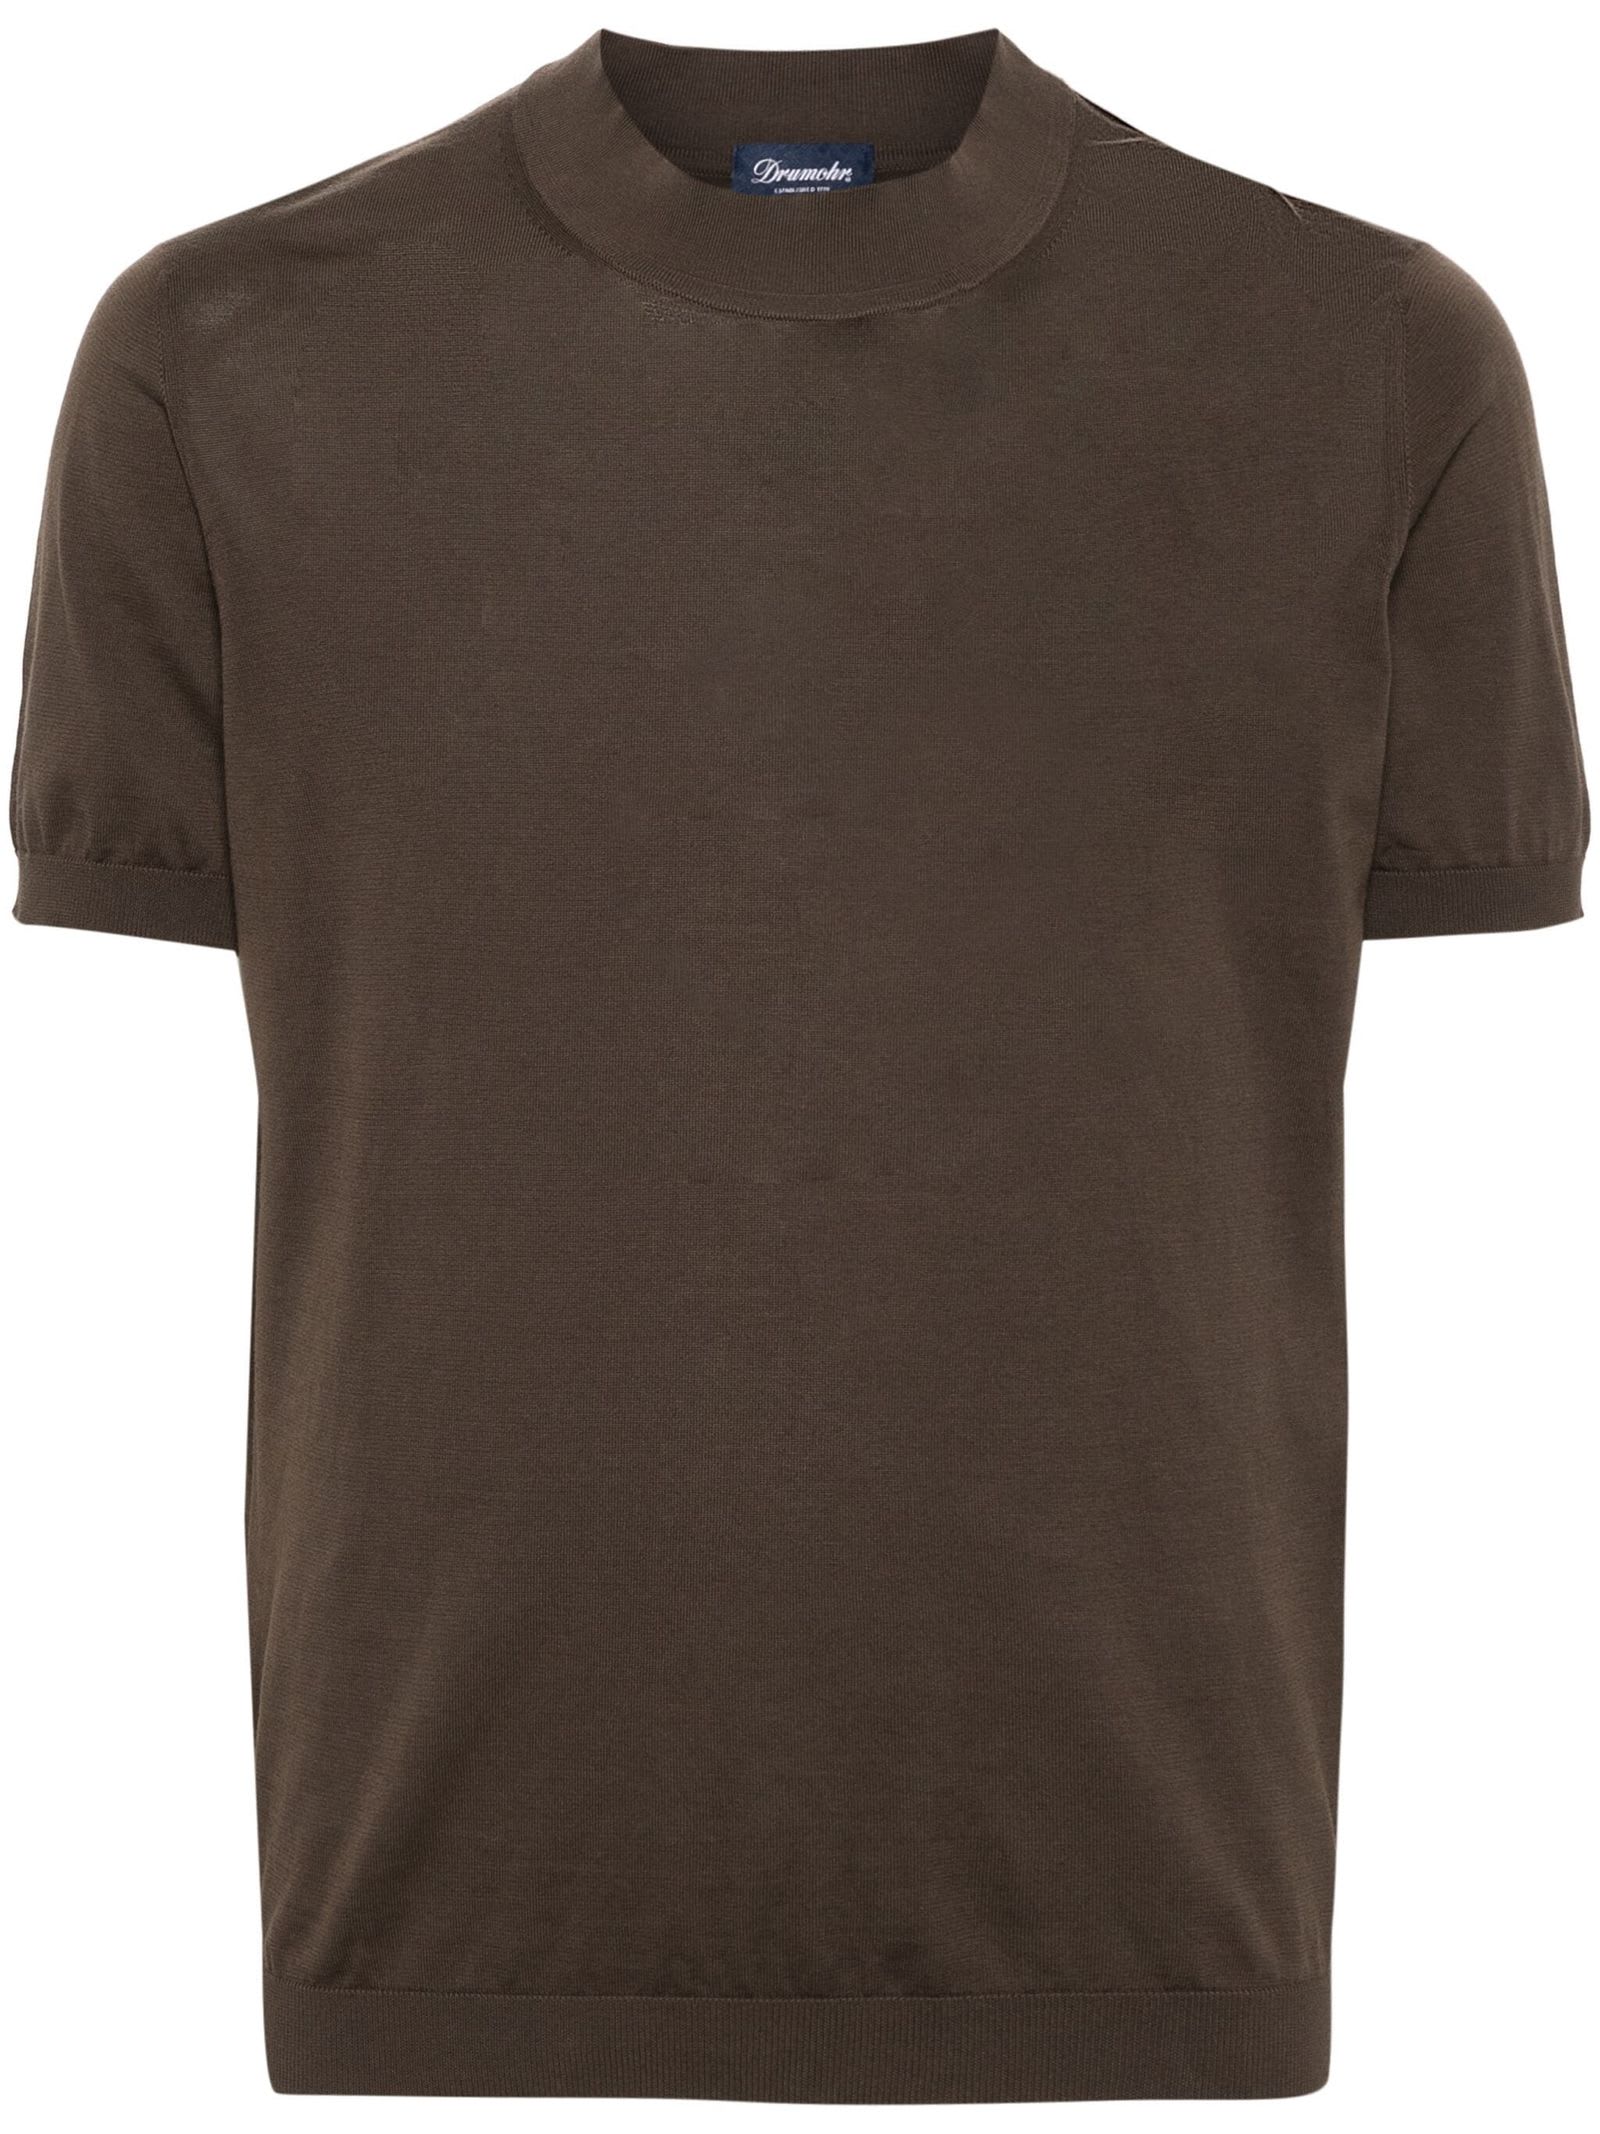 Shop Drumohr Brown Cotton T-shirt